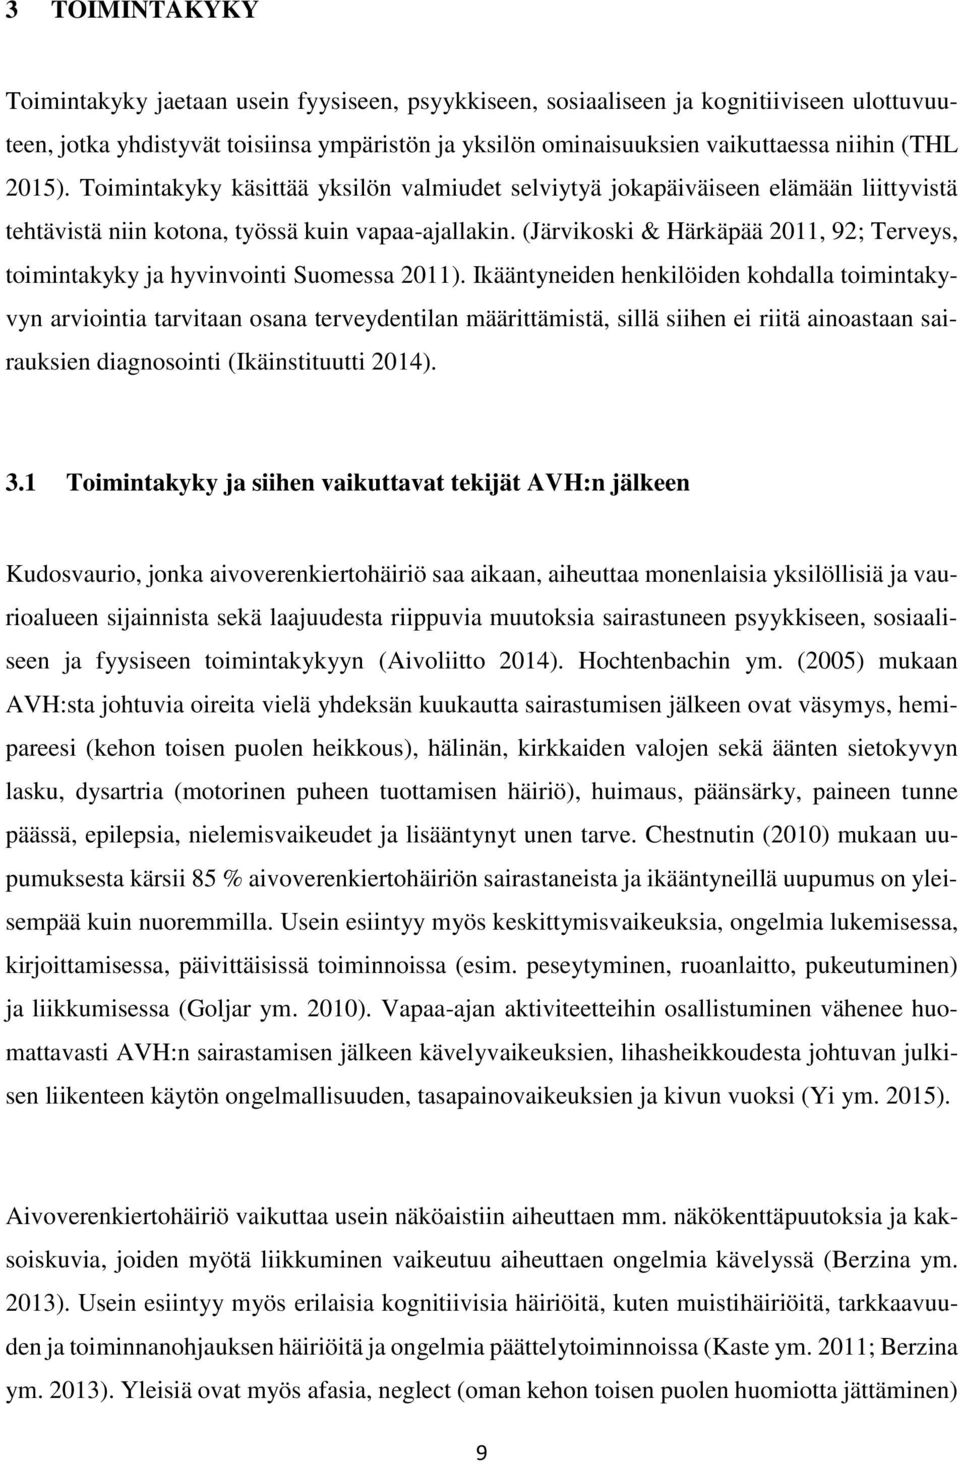 (Järvikoski & Härkäpää 2011, 92; Terveys, toimintakyky ja hyvinvointi Suomessa 2011).